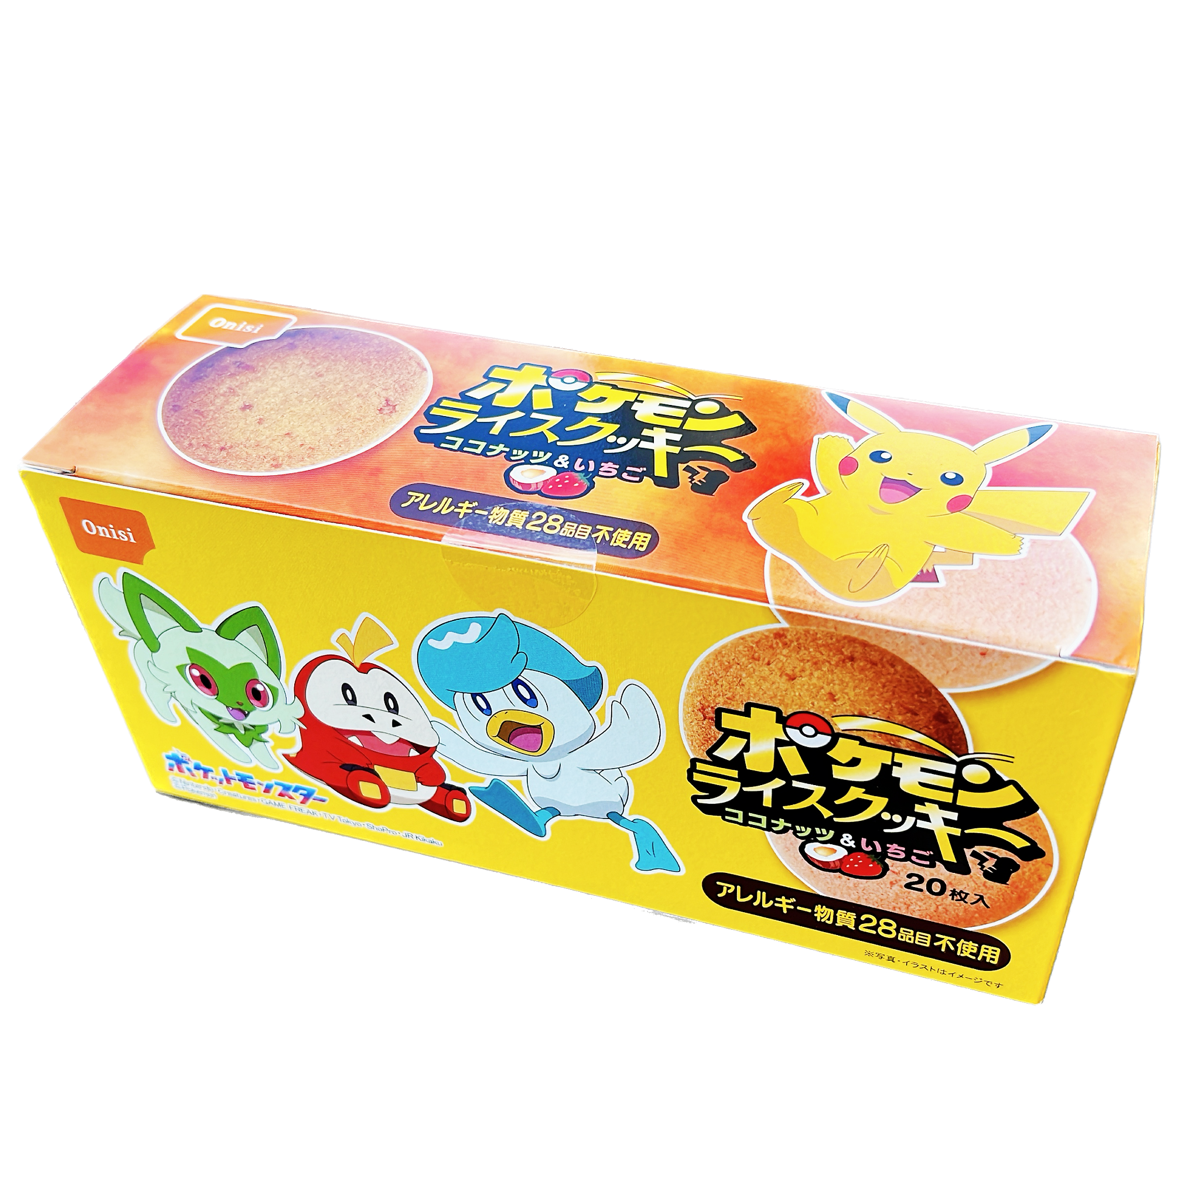 Pokemon Rice Cookie